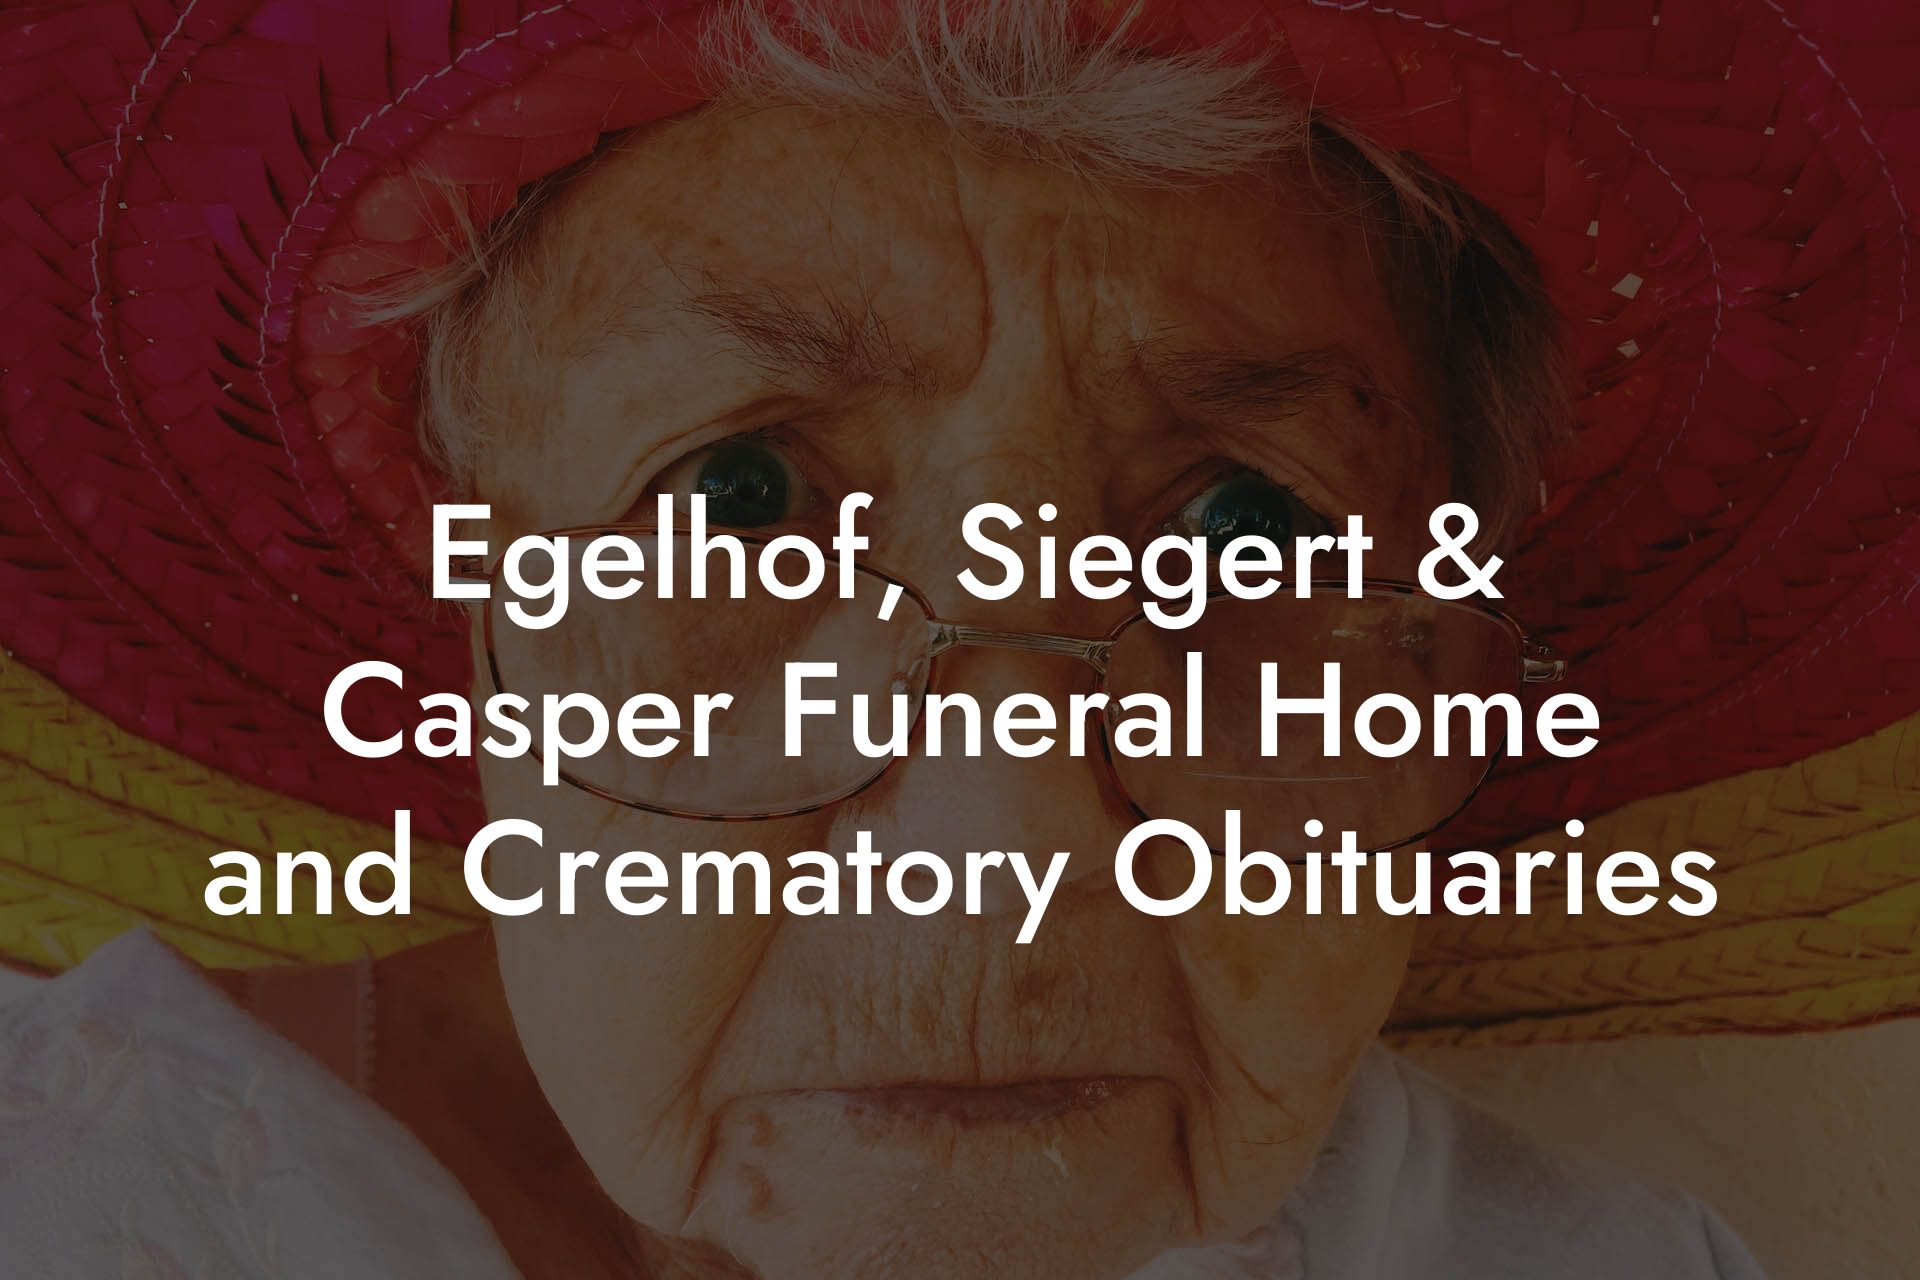 Egelhof, Siegert & Casper Funeral Home and Crematory Obituaries